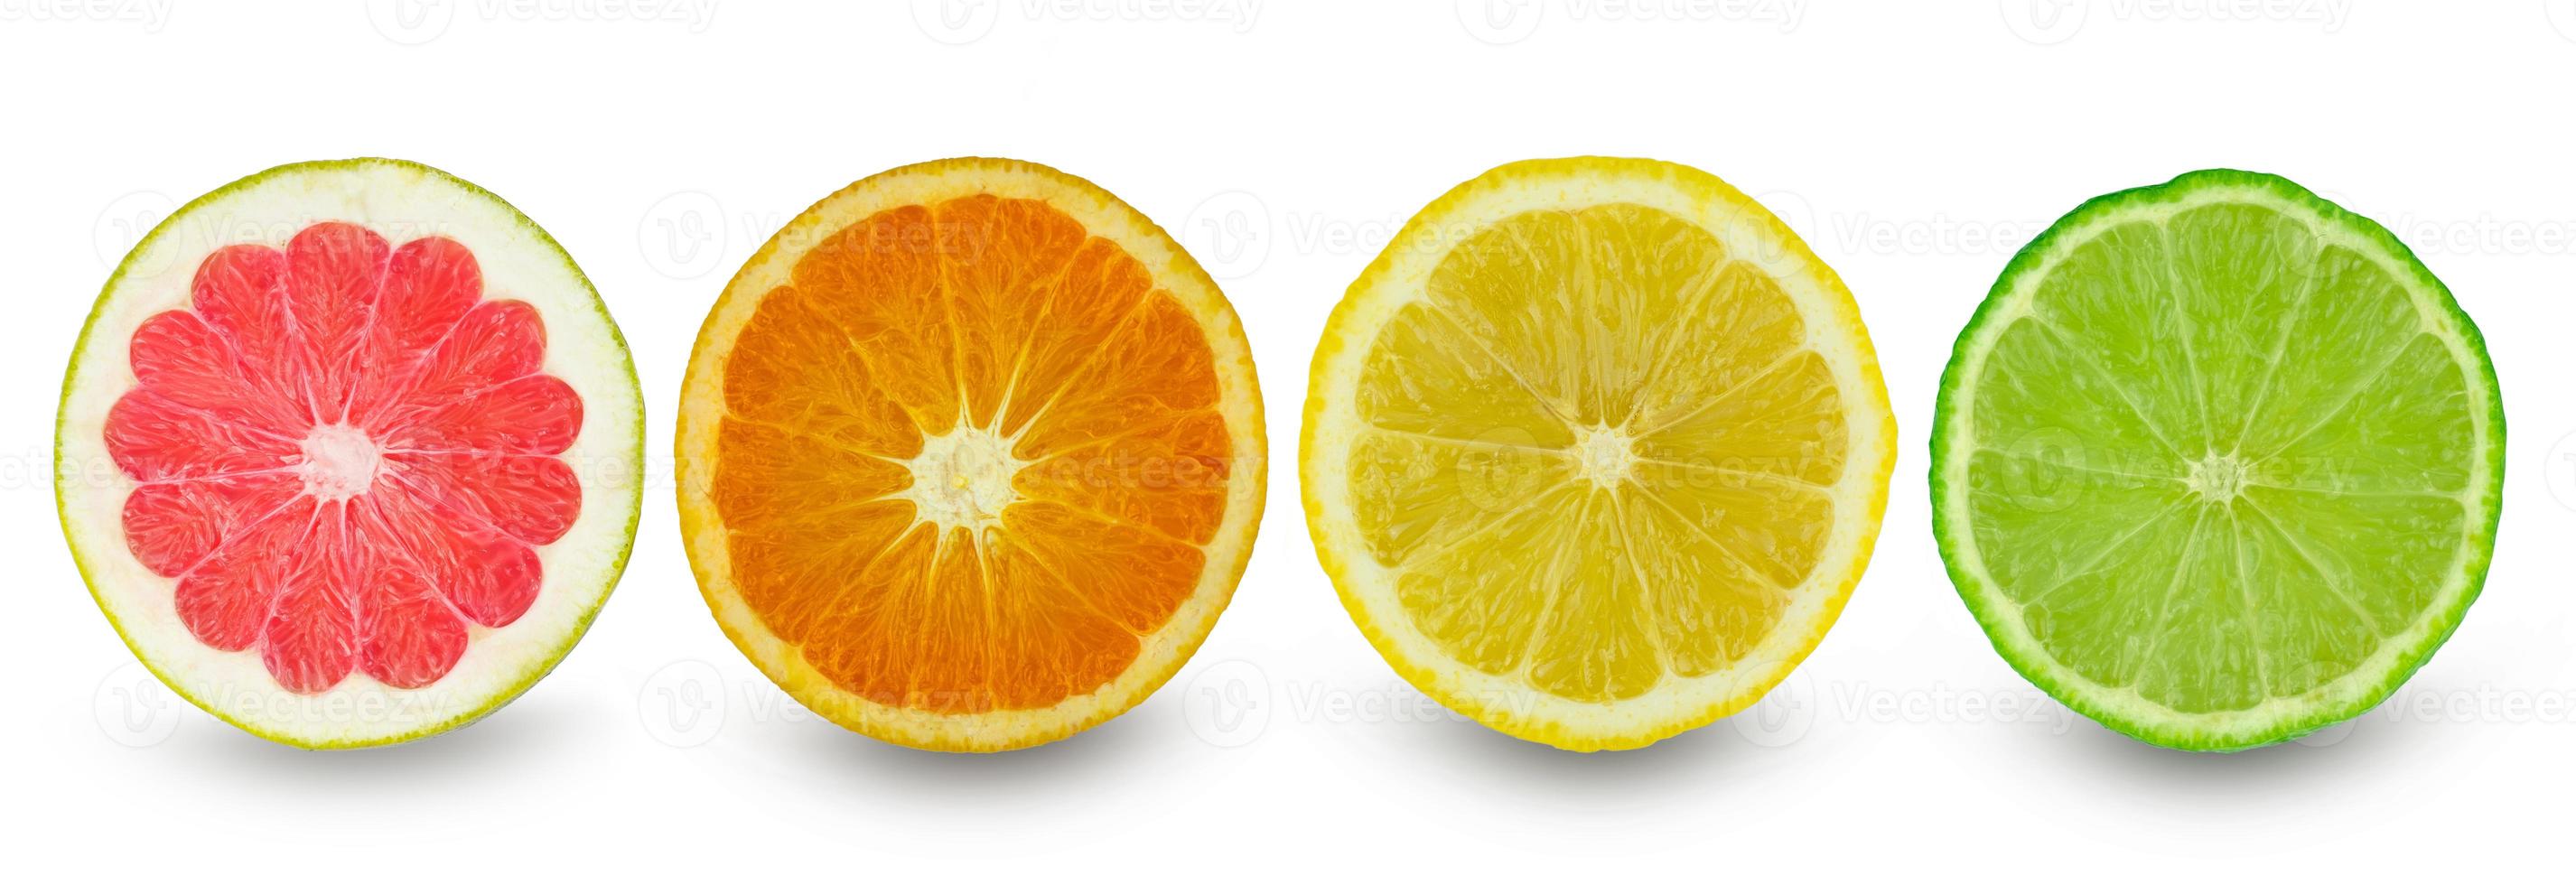 citrus plakjes geïsoleerde witte achtergrond foto